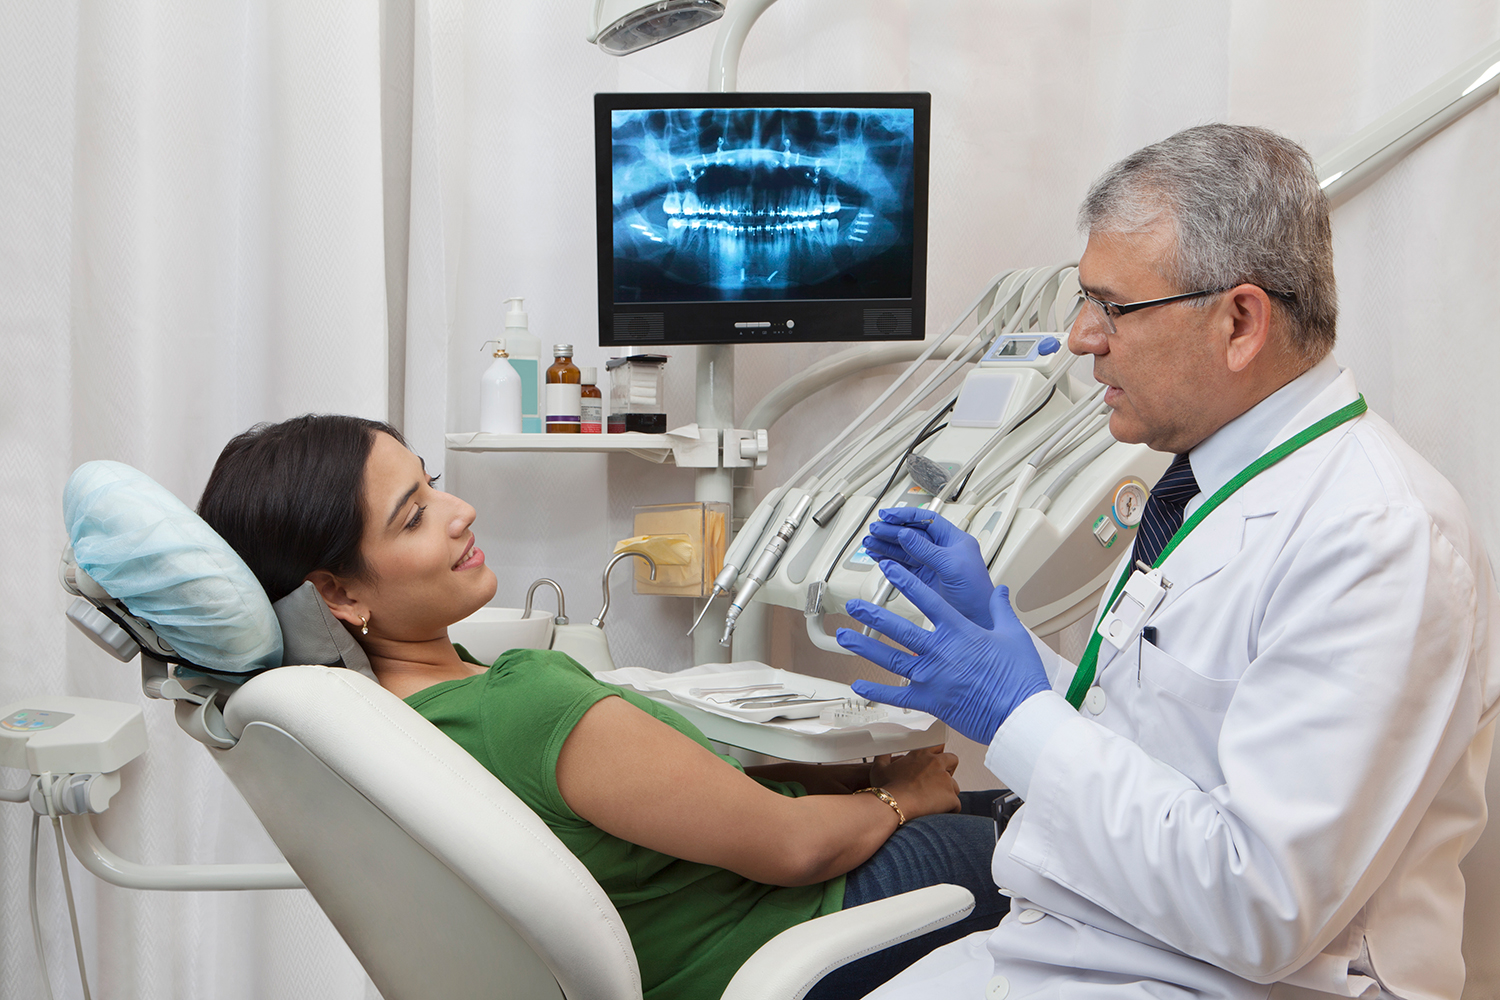 Стоматология в японии: лечение зубов и протезирование - отзывы